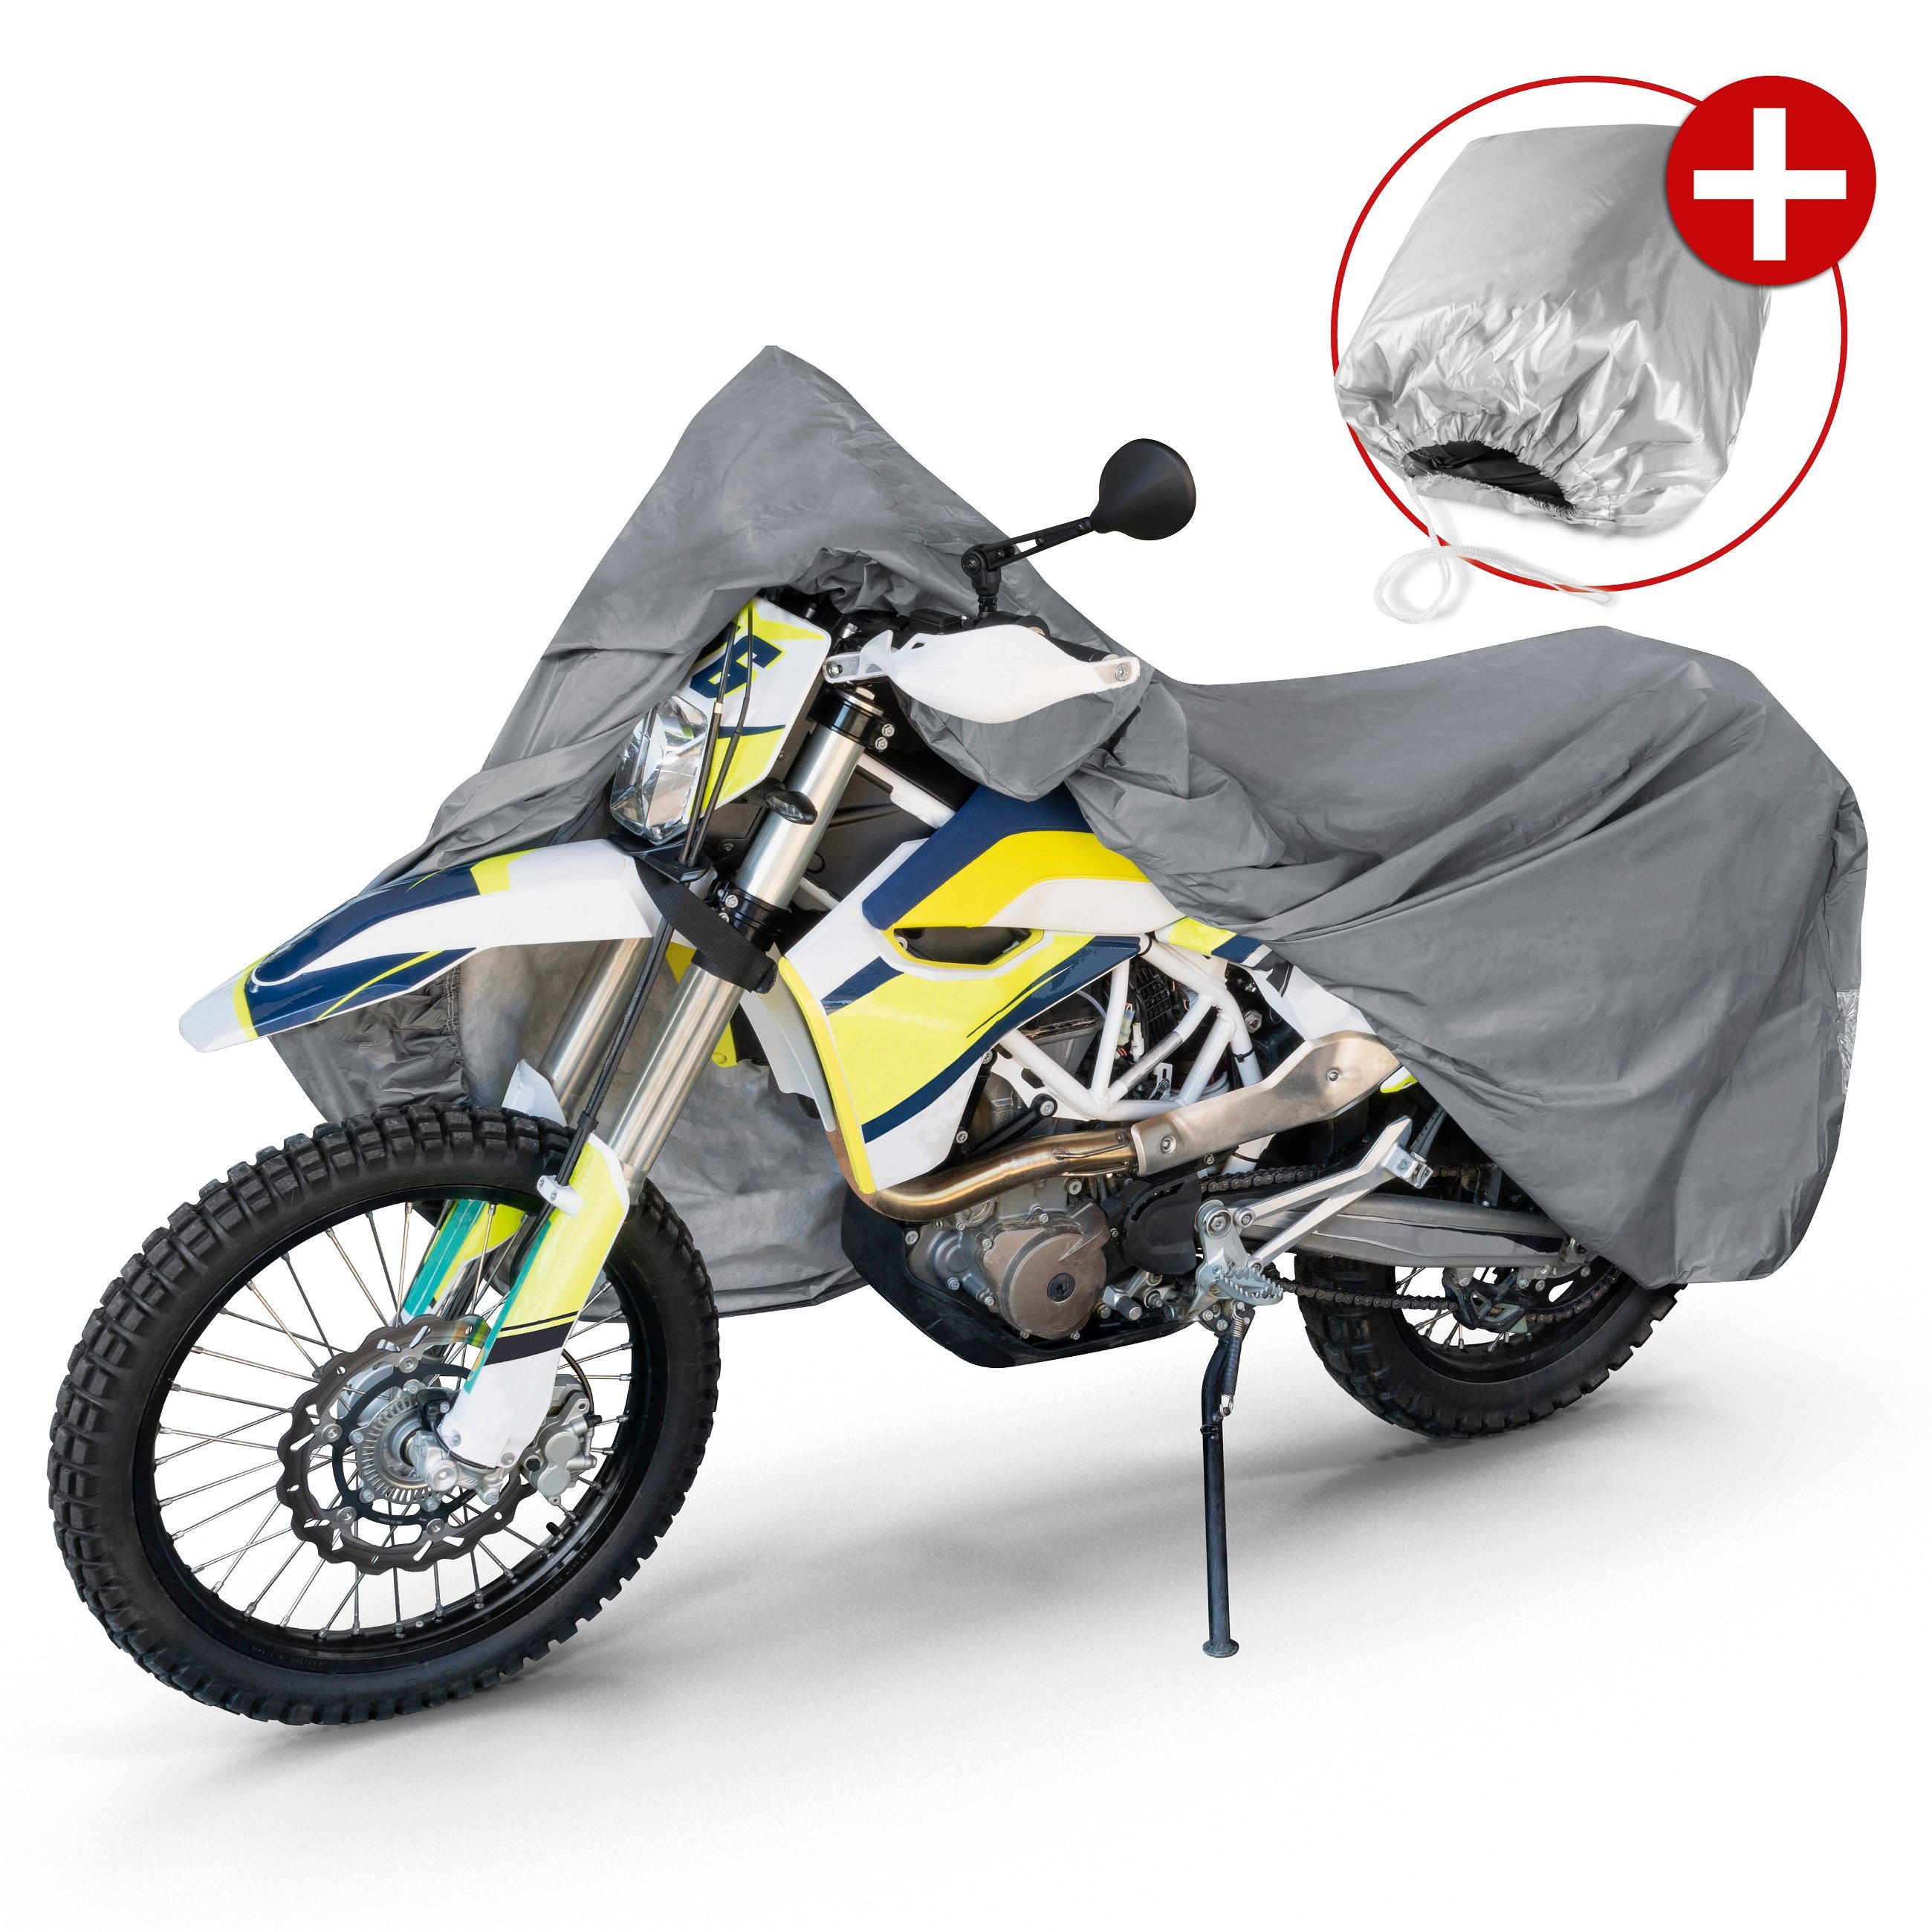 Garage à motos Enduro taille XL PVC - 255 x 110 x 135 cm gris